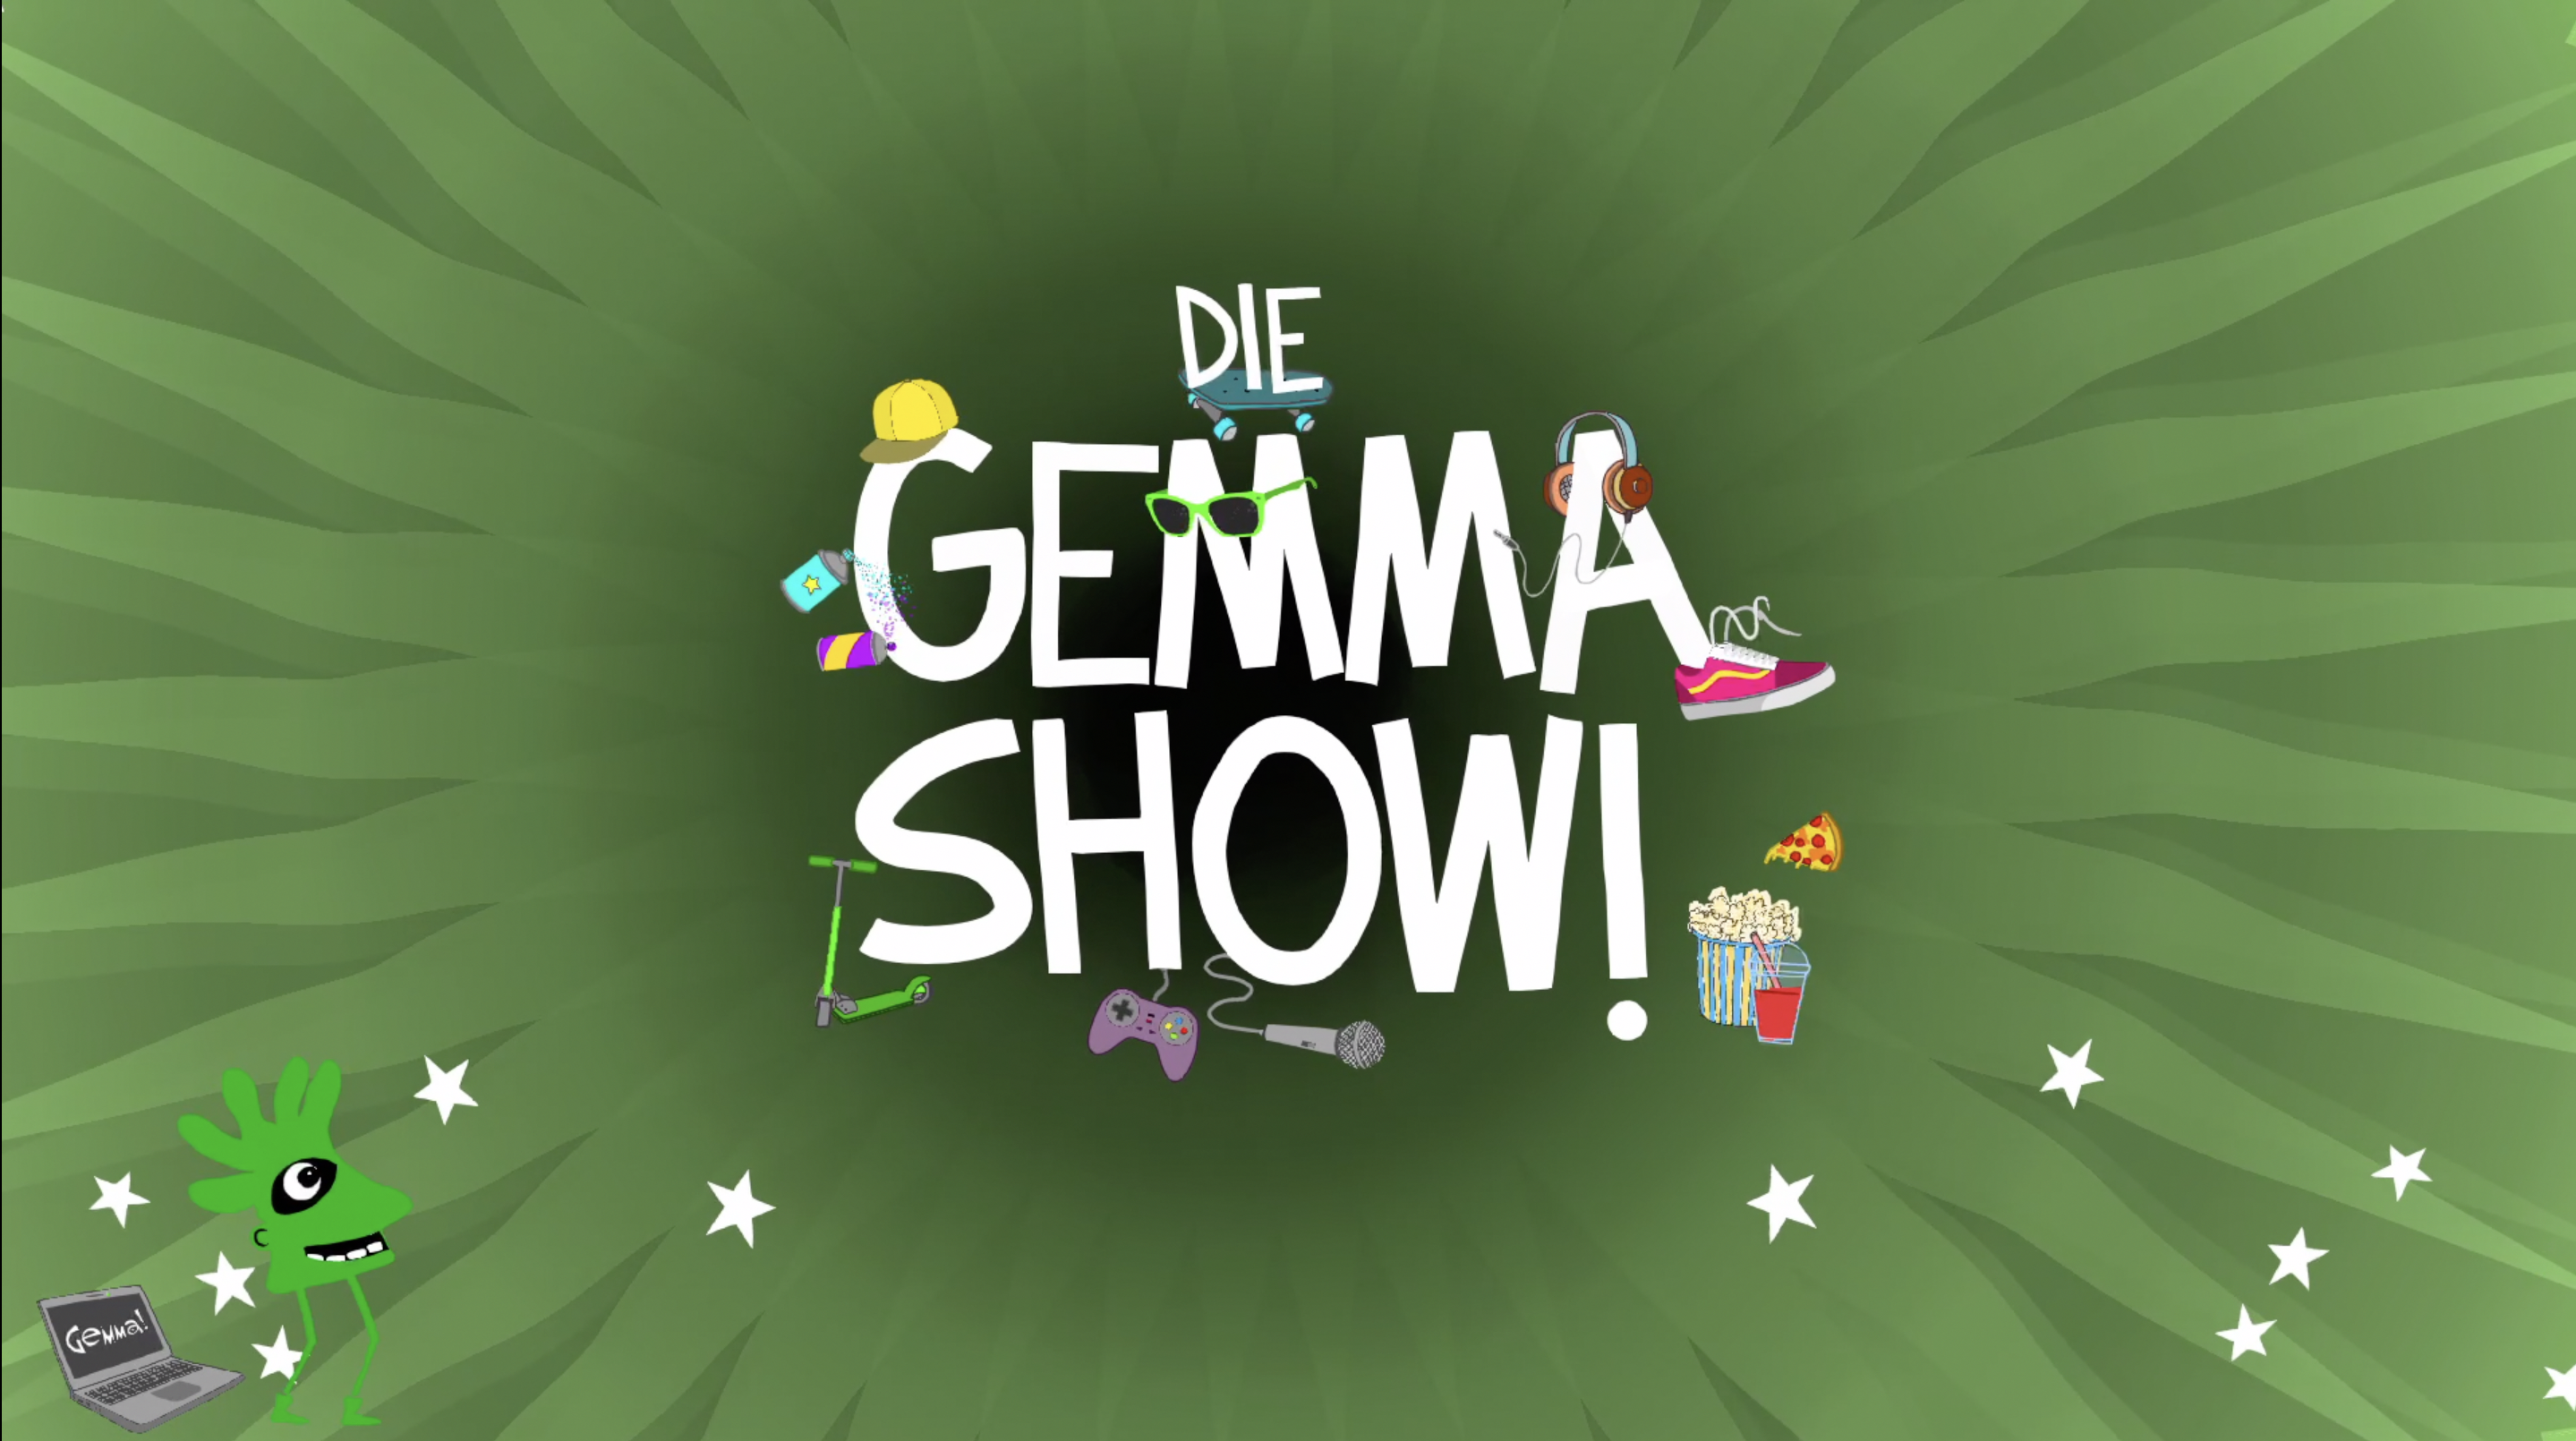 Mi 15. Dezember um 19:00: Die Gemma Show! ⭐️